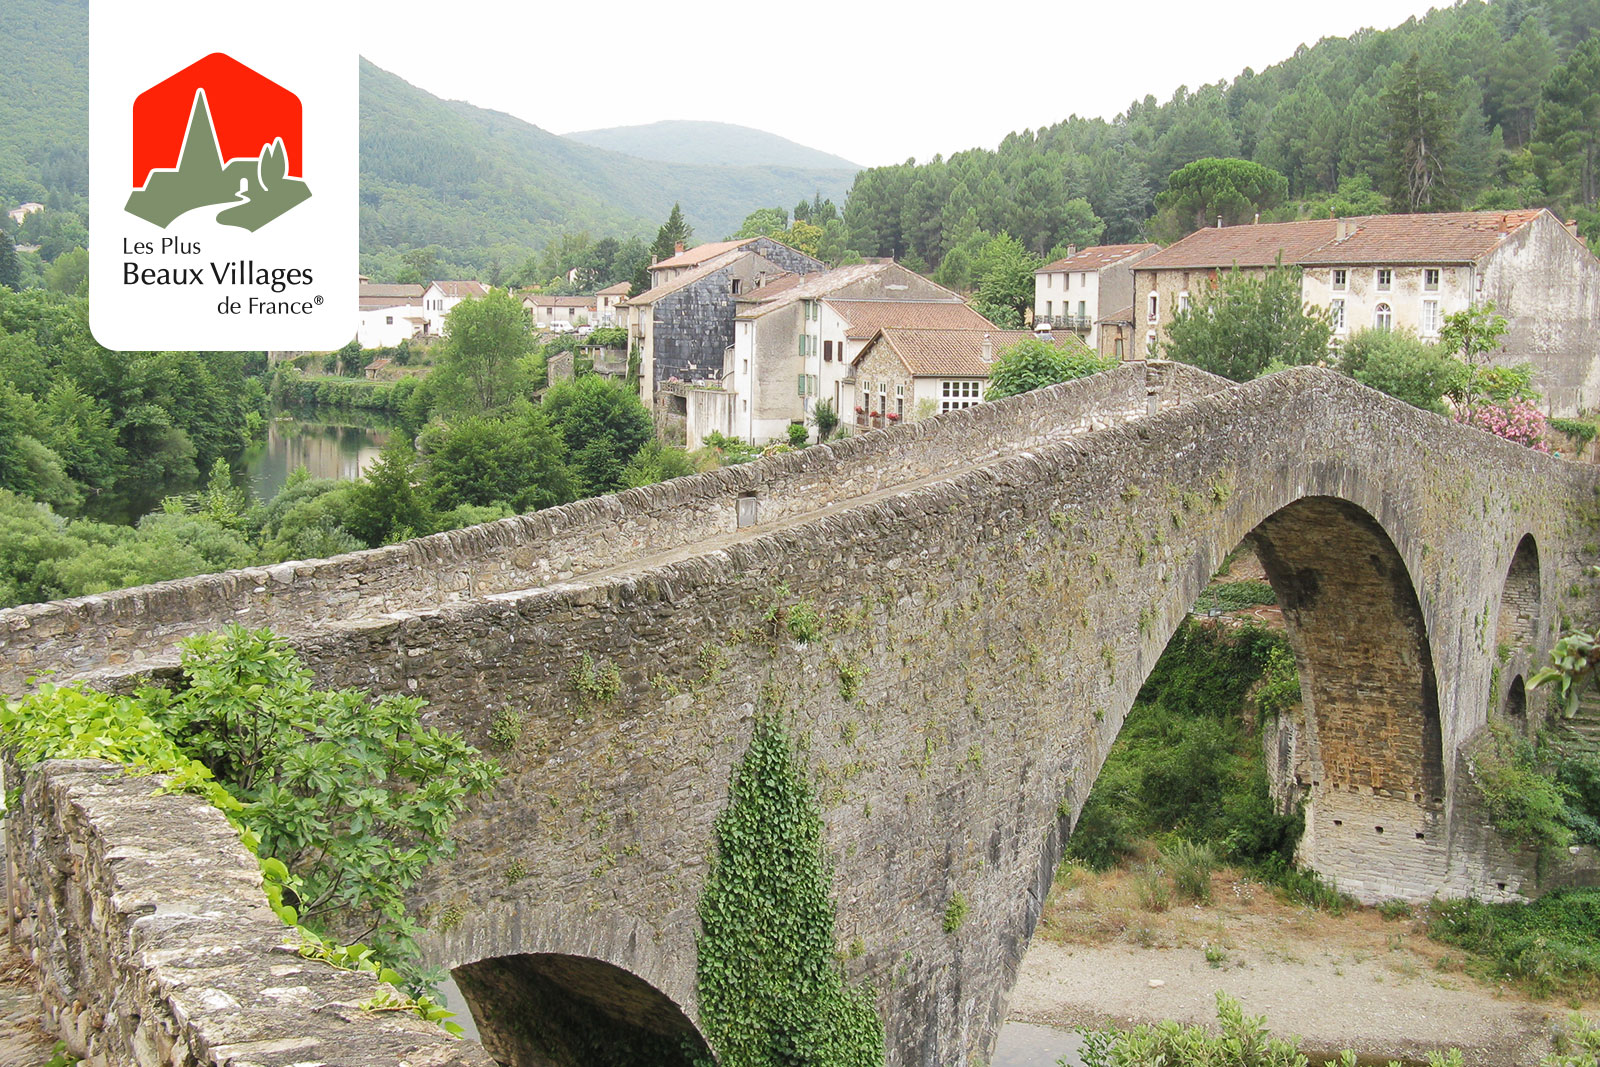 Plus Beaux Villages de France. Most beautiful villages of Hérault (Occitania) France.